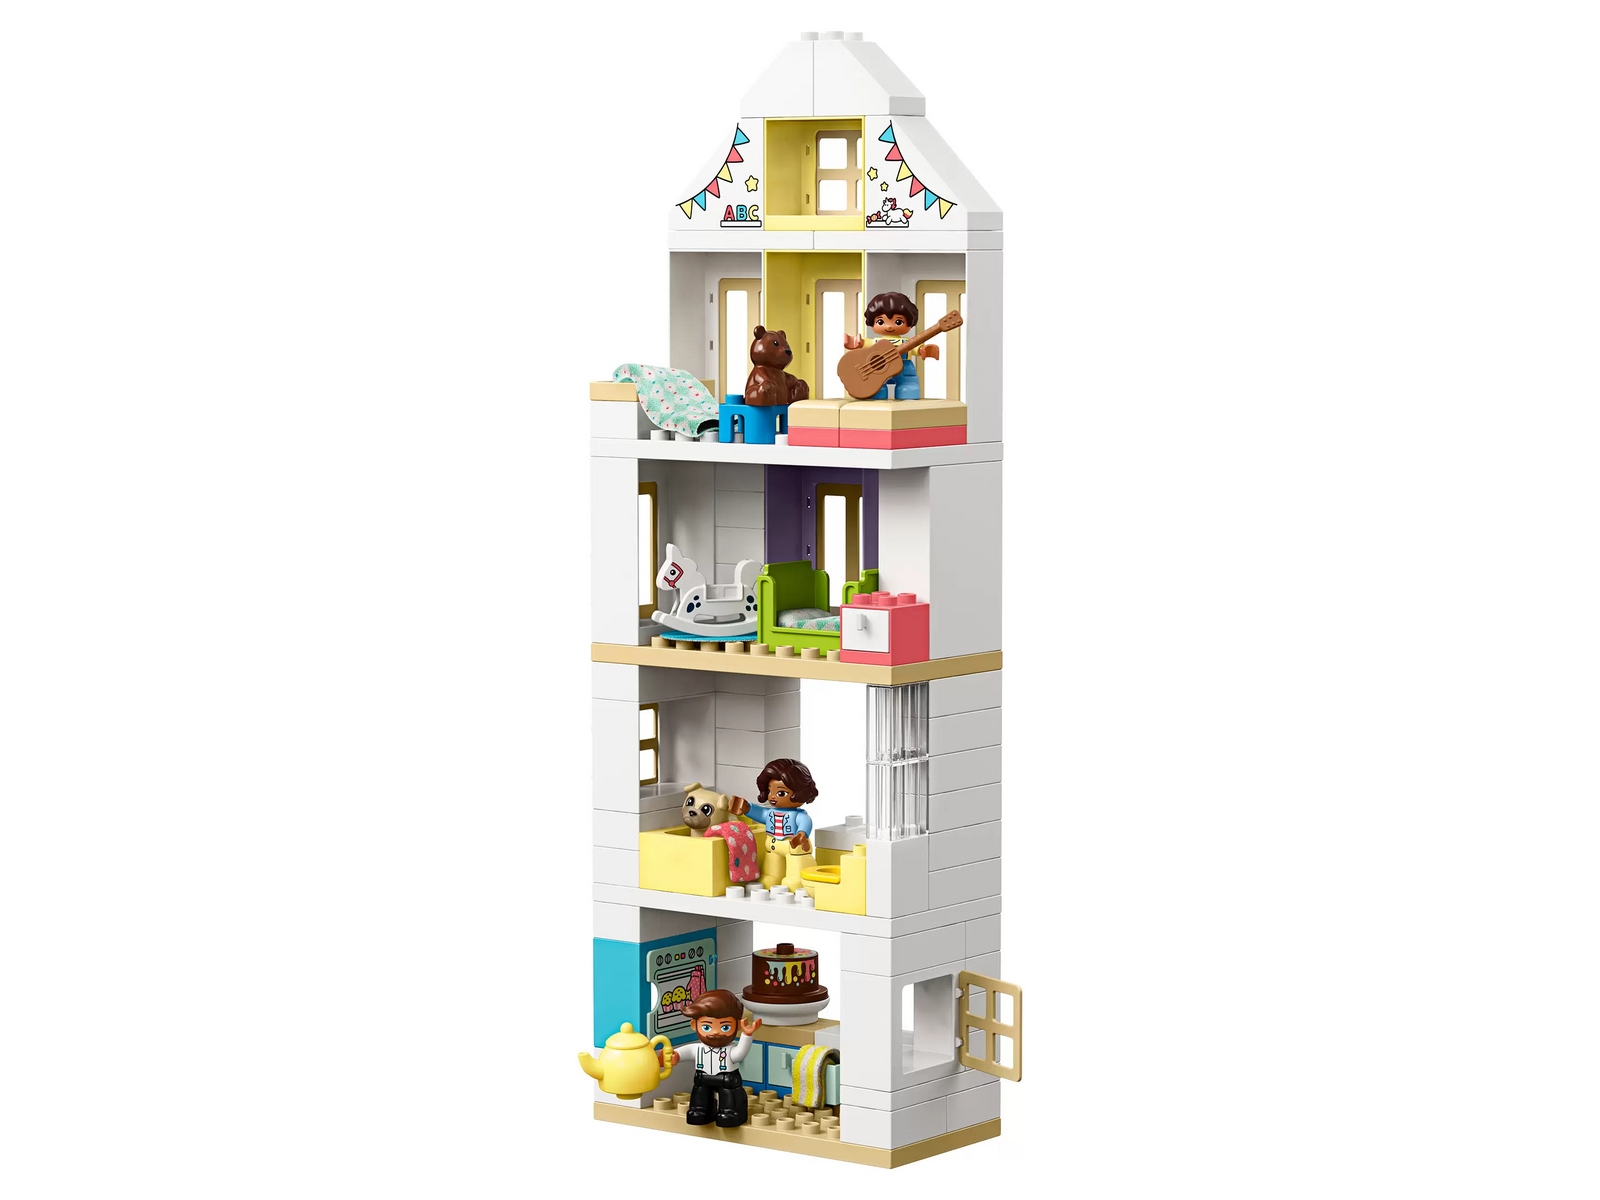 Конструктор LEGO DUPLO Town «Модульный игрушечный дом» 10929 / 129 деталей